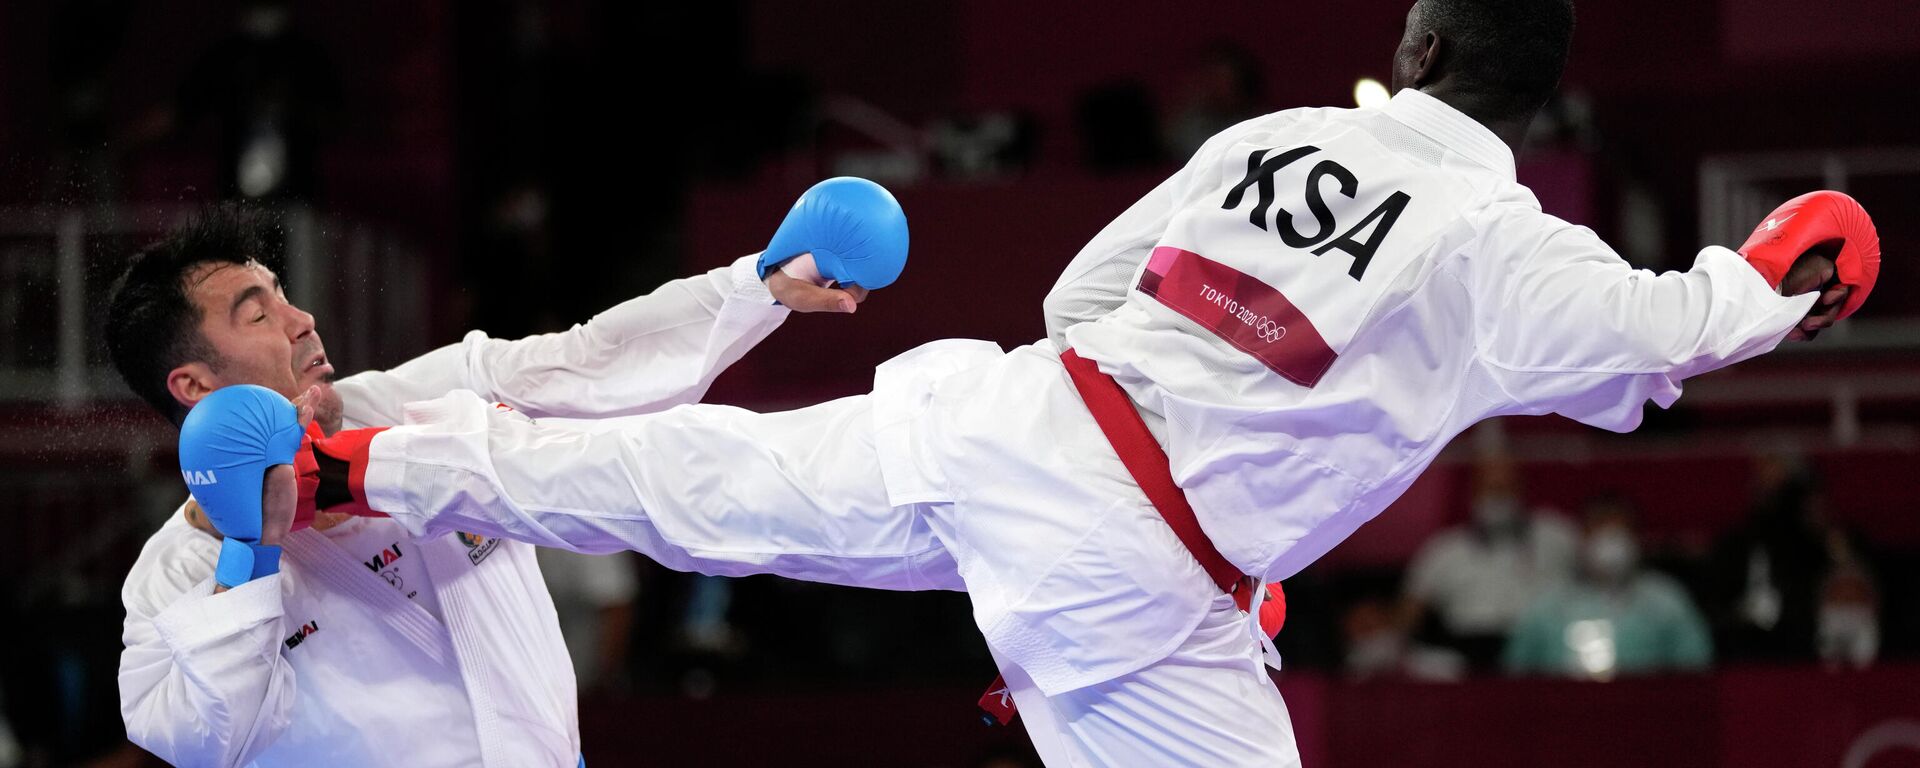 Nokaut koji je odlučio finale u karateu do 75kg na Olimpijskim igrama - Sputnik Srbija, 1920, 07.08.2021